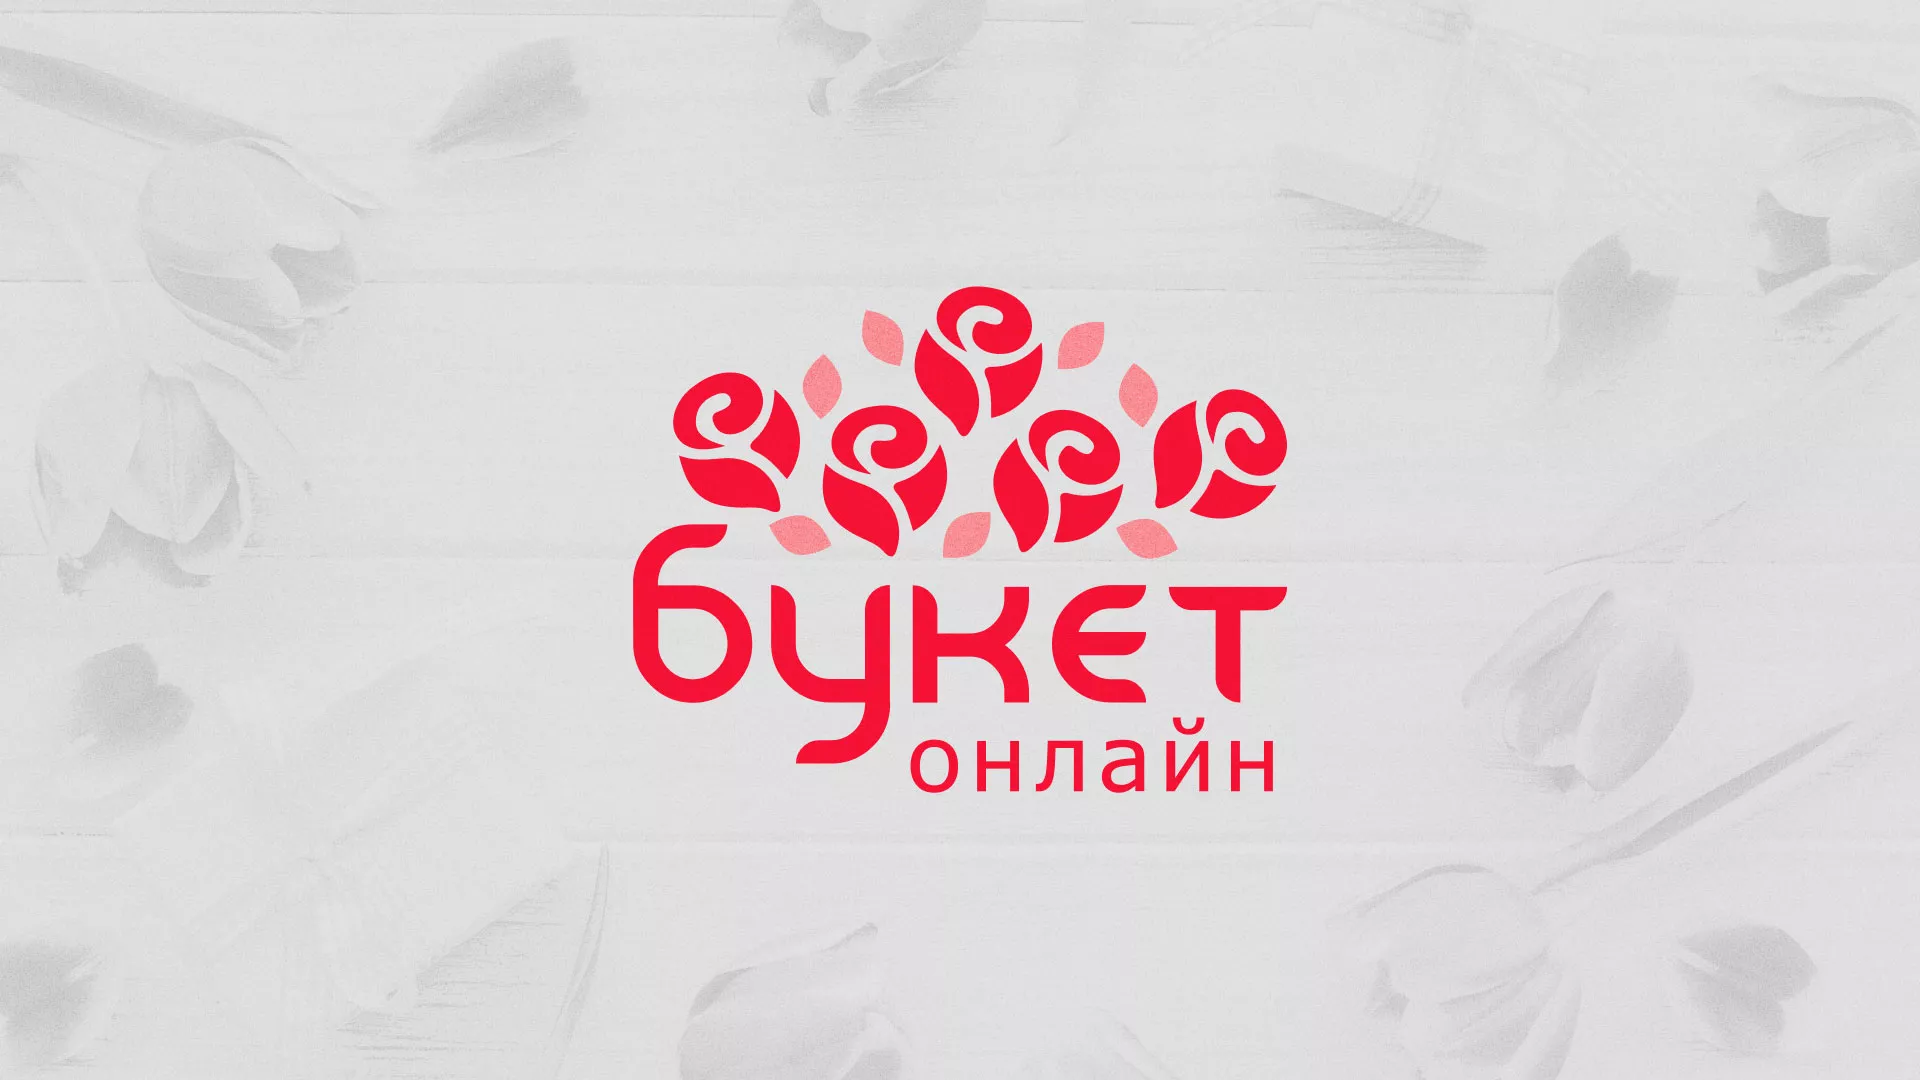 Создание интернет-магазина «Букет-онлайн» по цветам в Кадникове